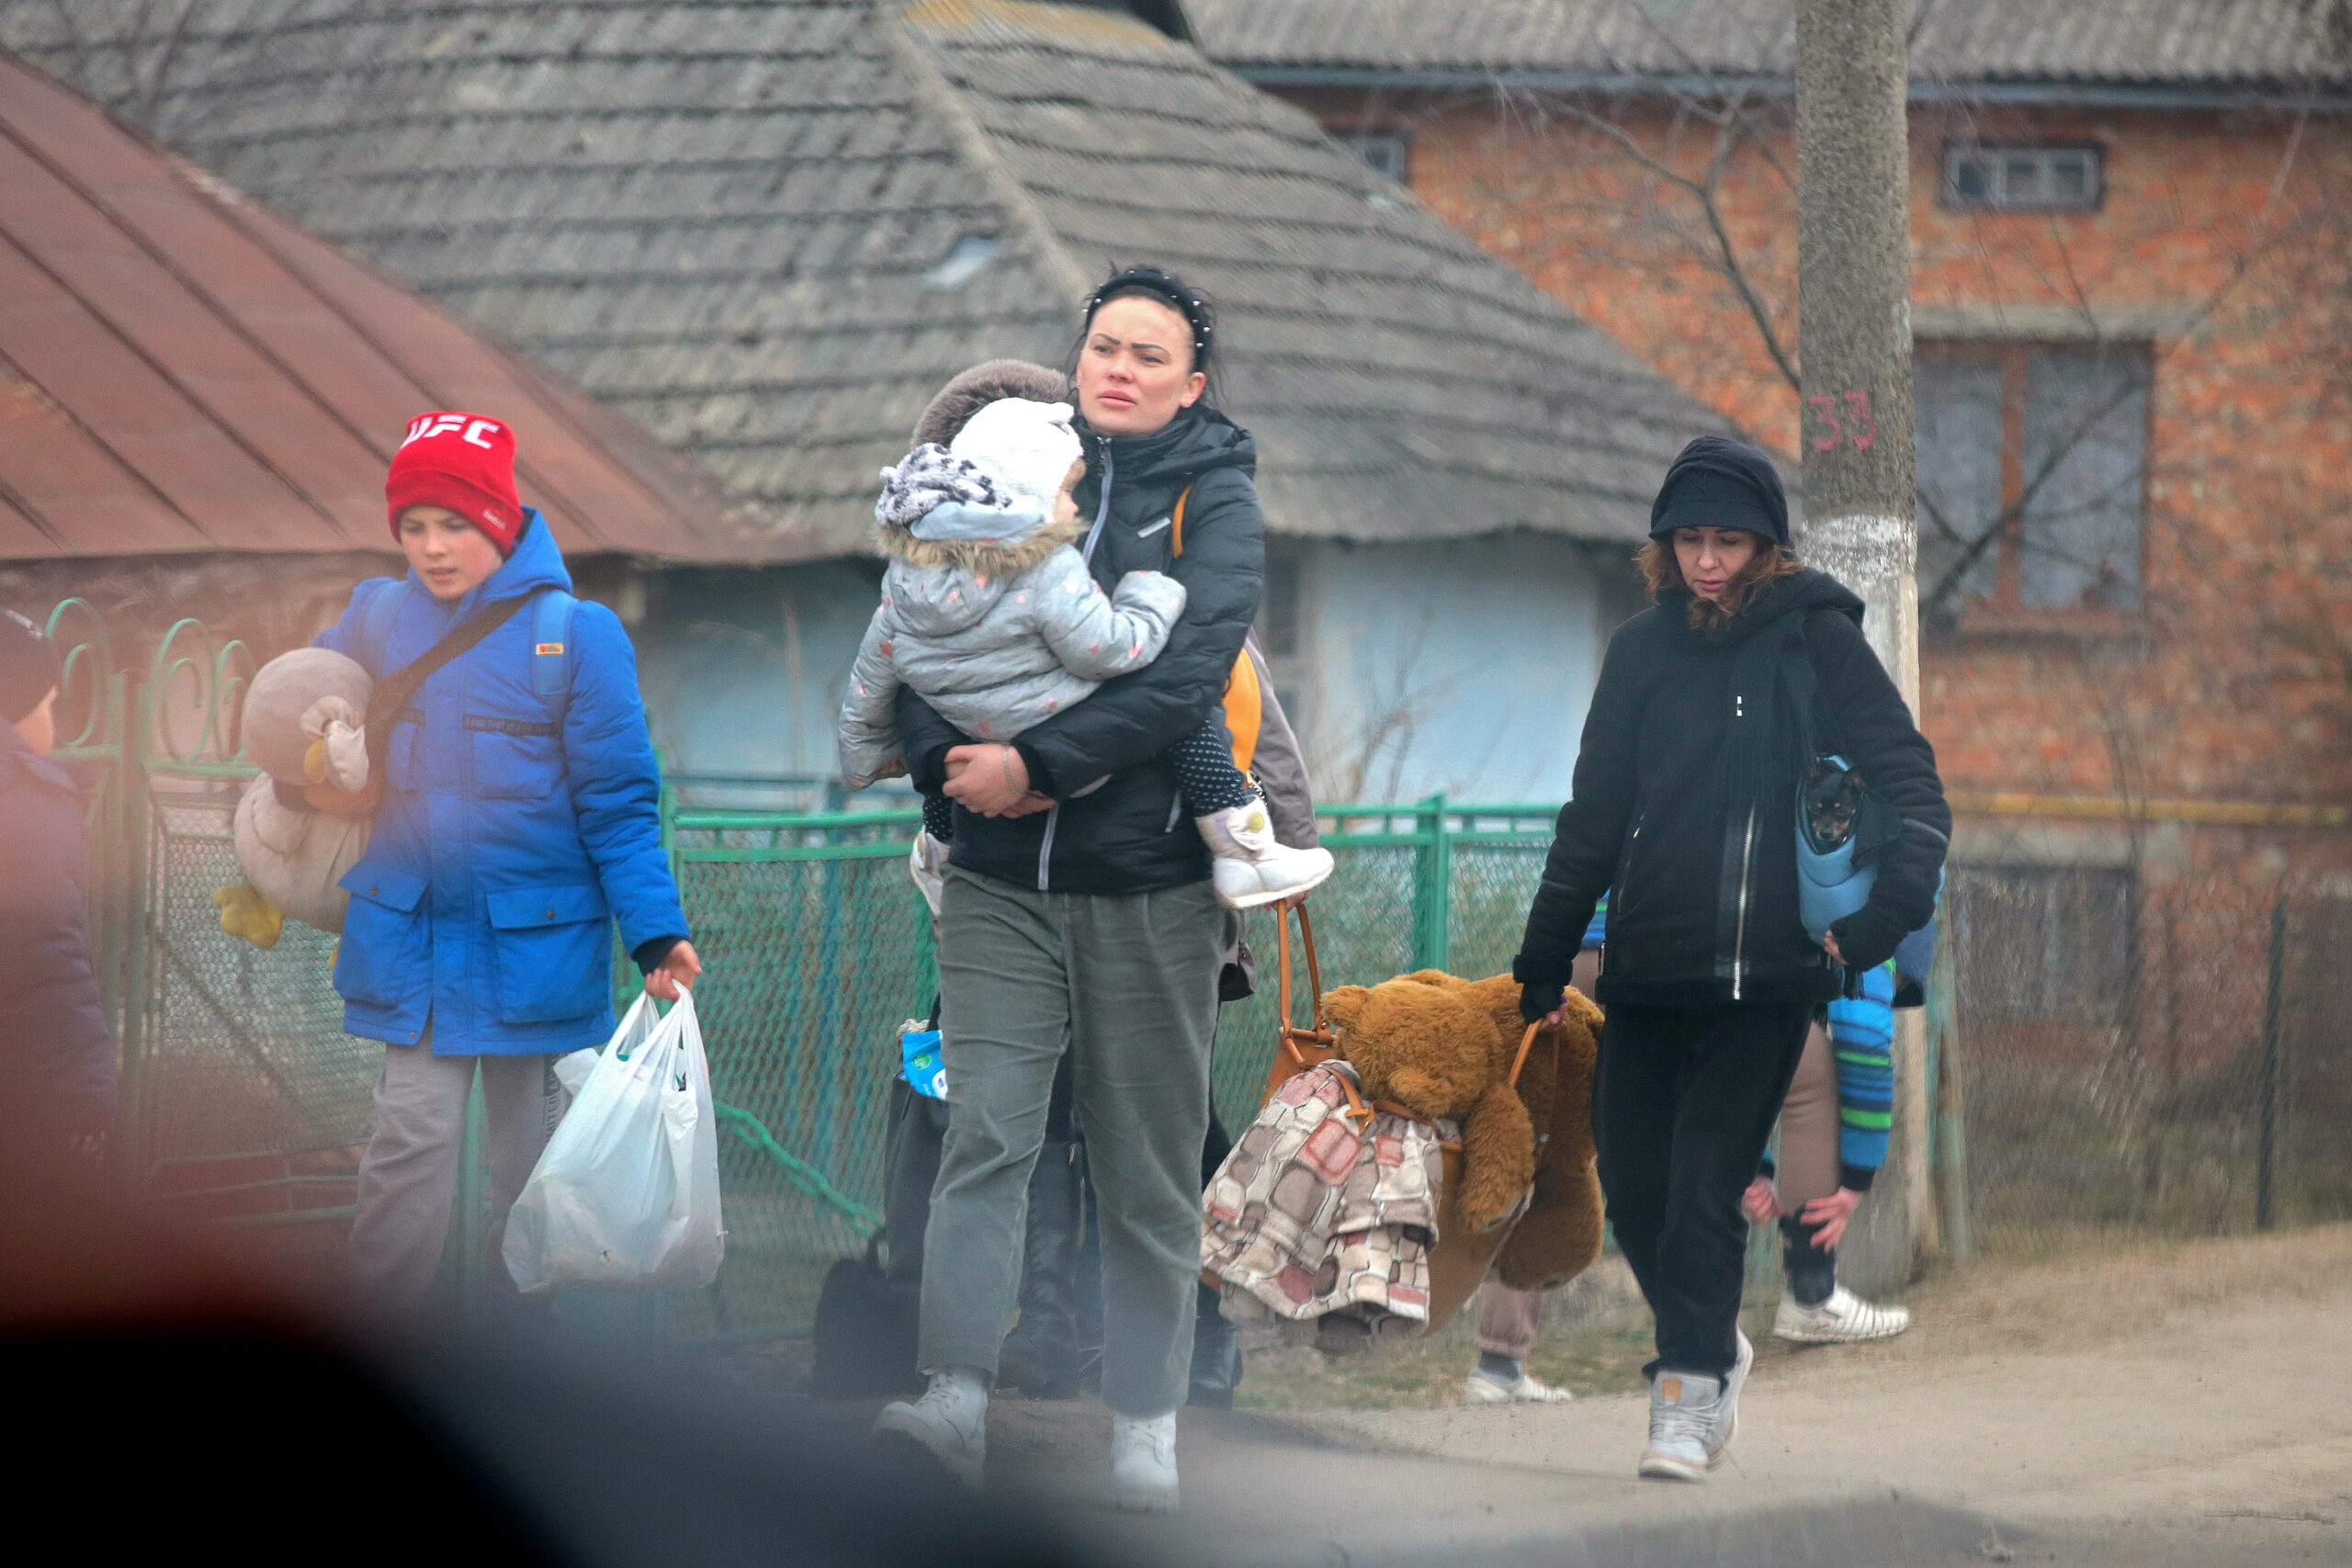 La cifra de refugiados desde Ucrania se acerca ya a los 2,3 millones